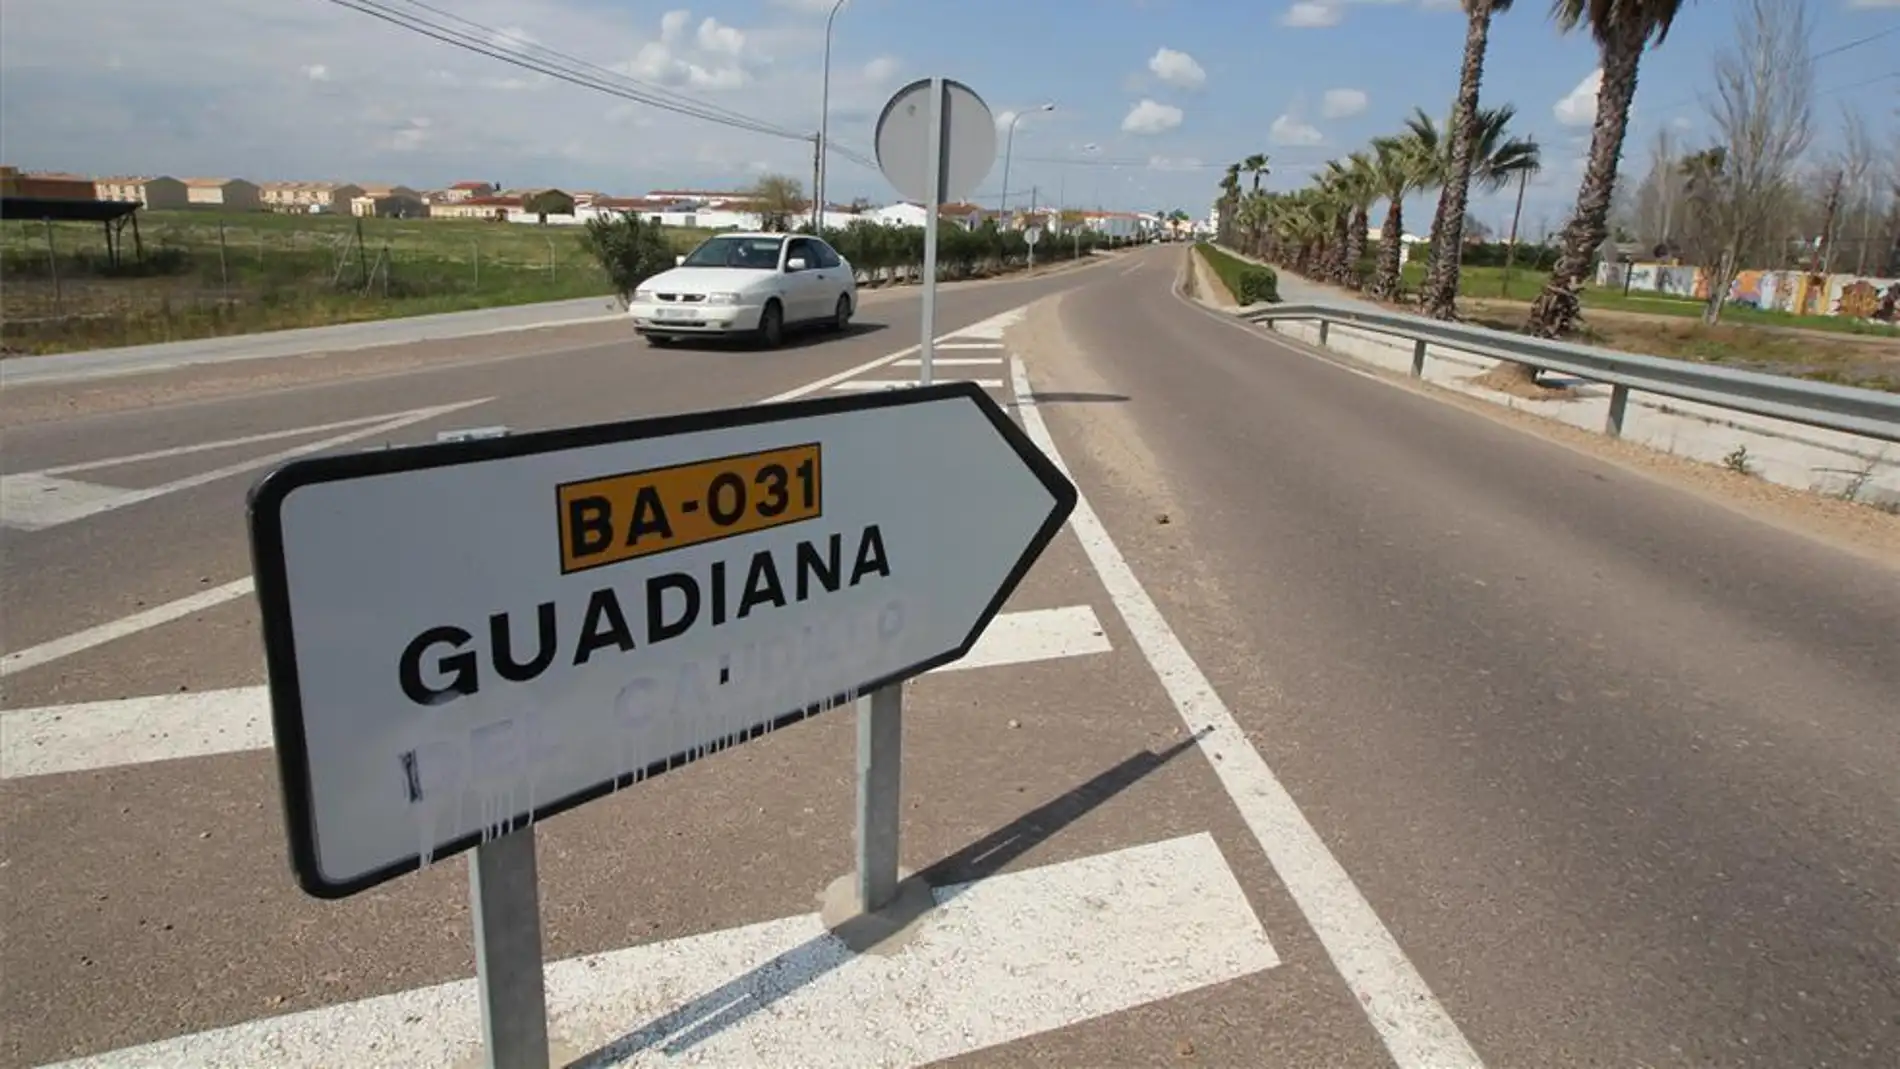 El Supremo no admite a trámite el recurso para mantener el nombre de 'Caudillo' en el municipio de Guadiana (Badajoz)